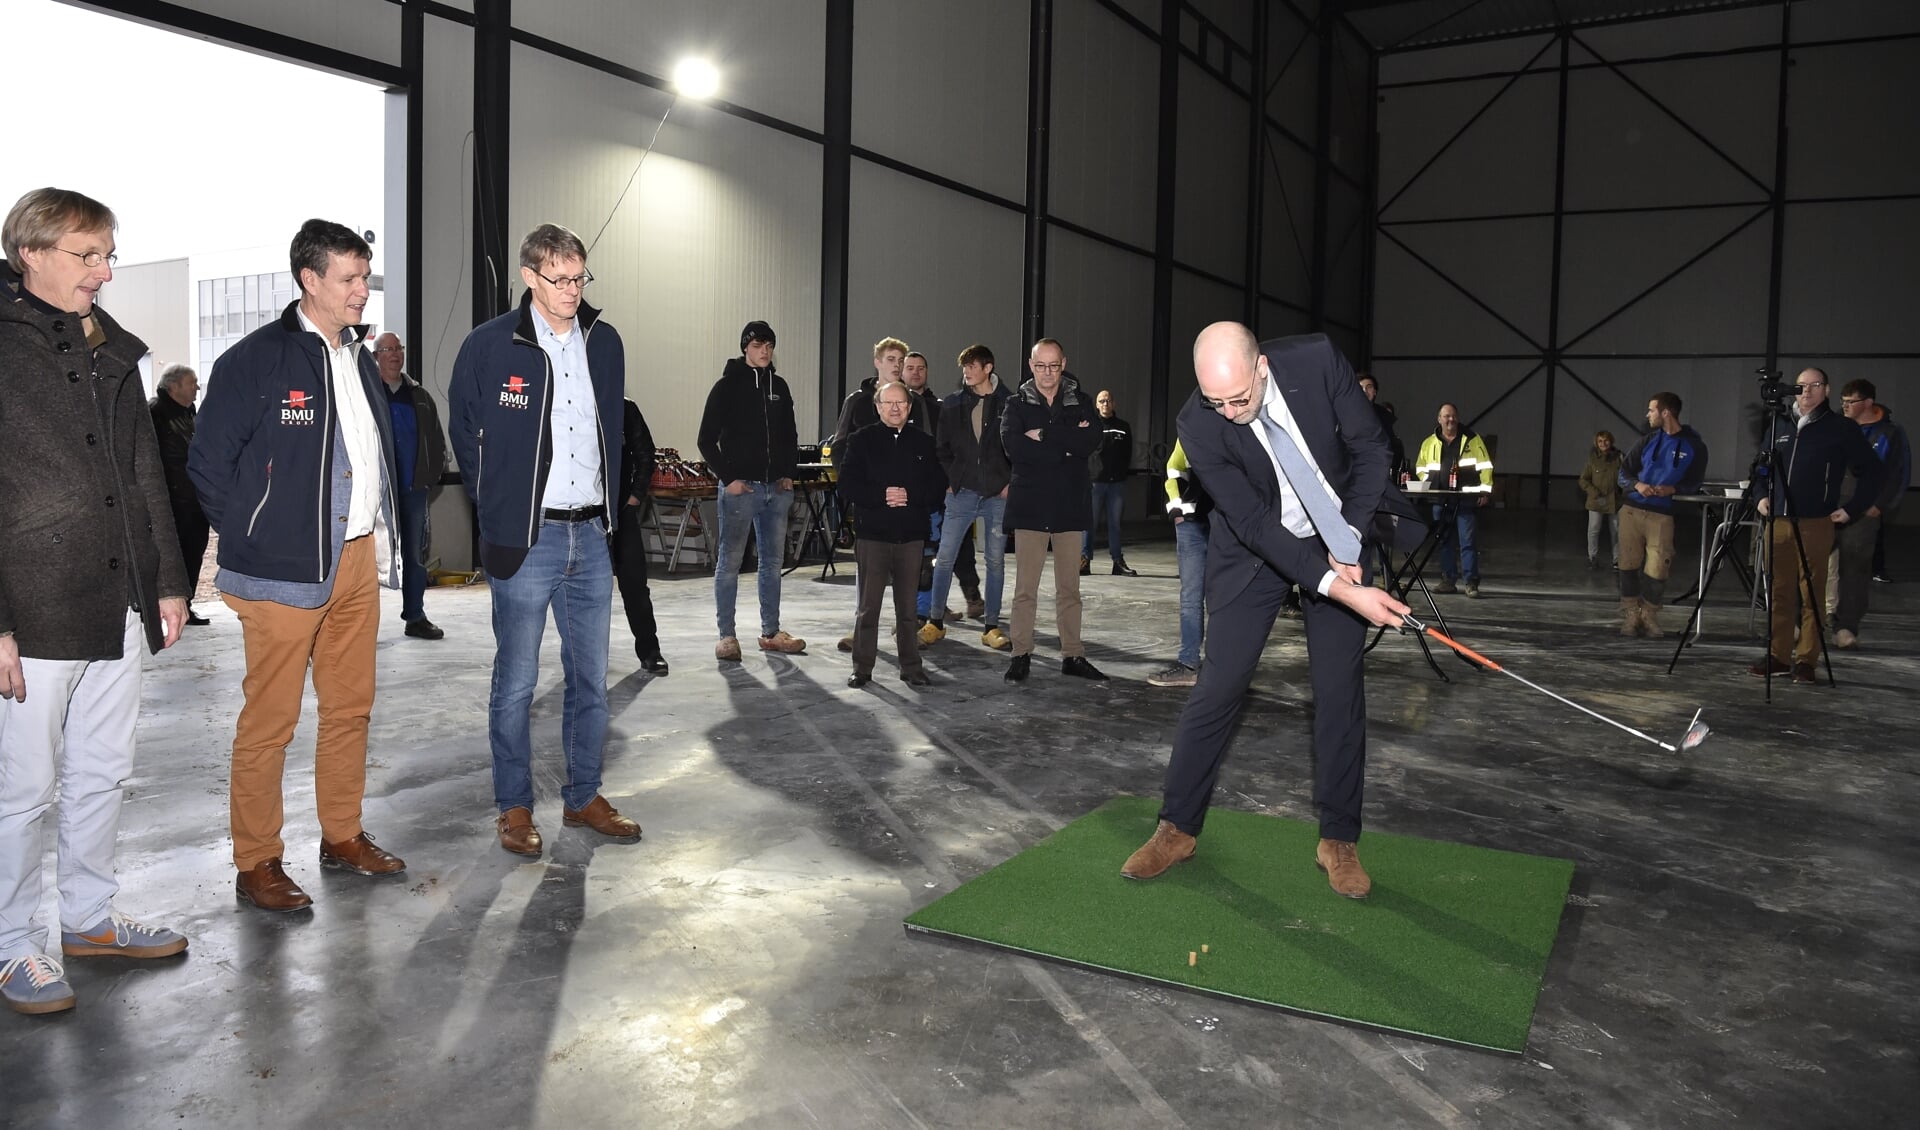 Wethouder Harrie Dijkhuizen sloeg de eerste golfbal in de magazijnhal van Duchell dat zich richt op de inrichting van onder meer golfbanen.